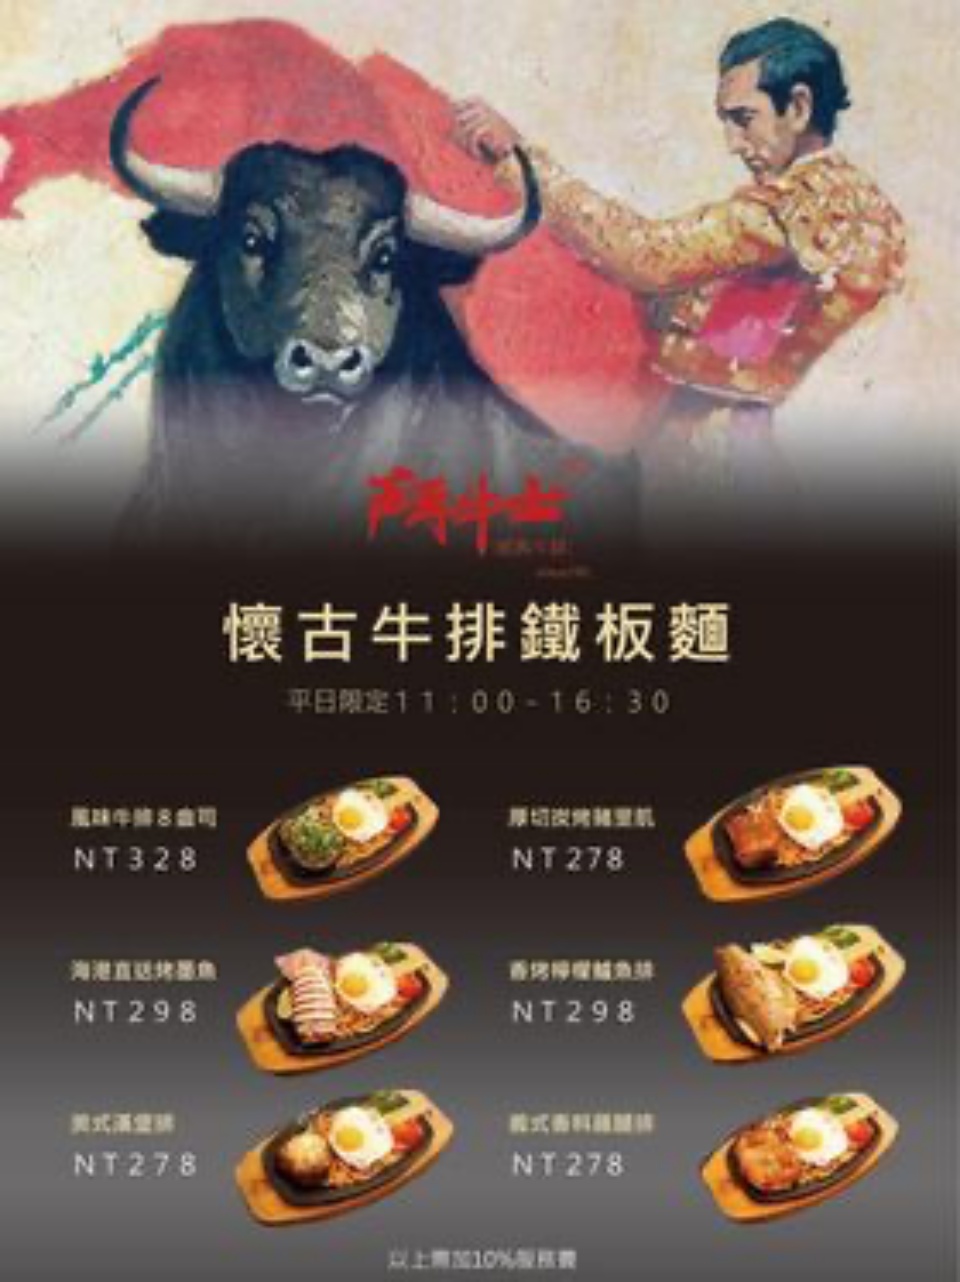 桃園牛排,鬥牛士經典牛排桃園筷食尚店